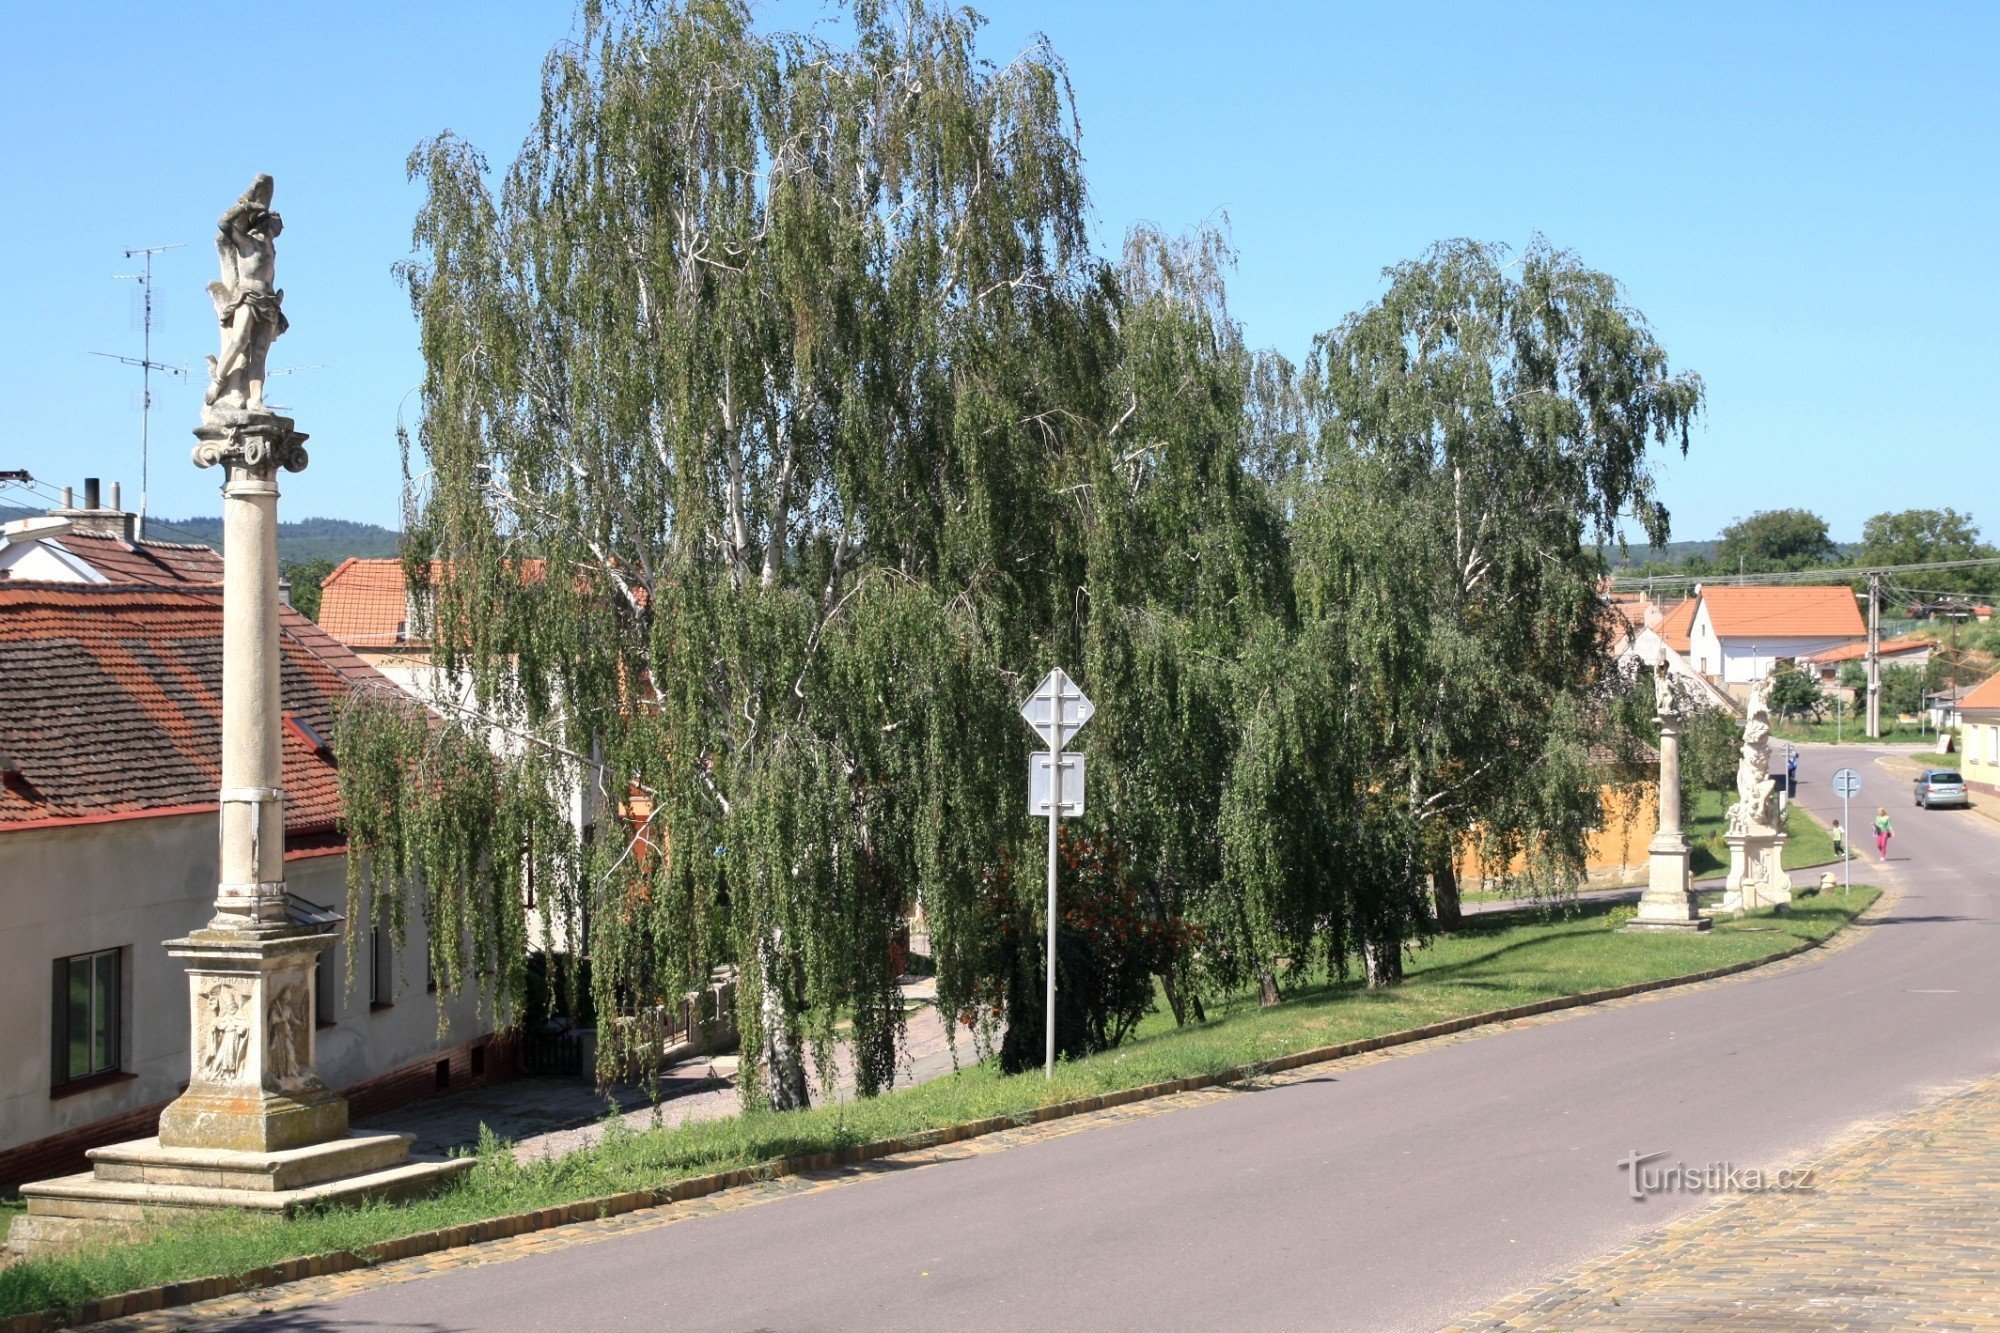 Šatov - małe zabytki sakralne we wsi